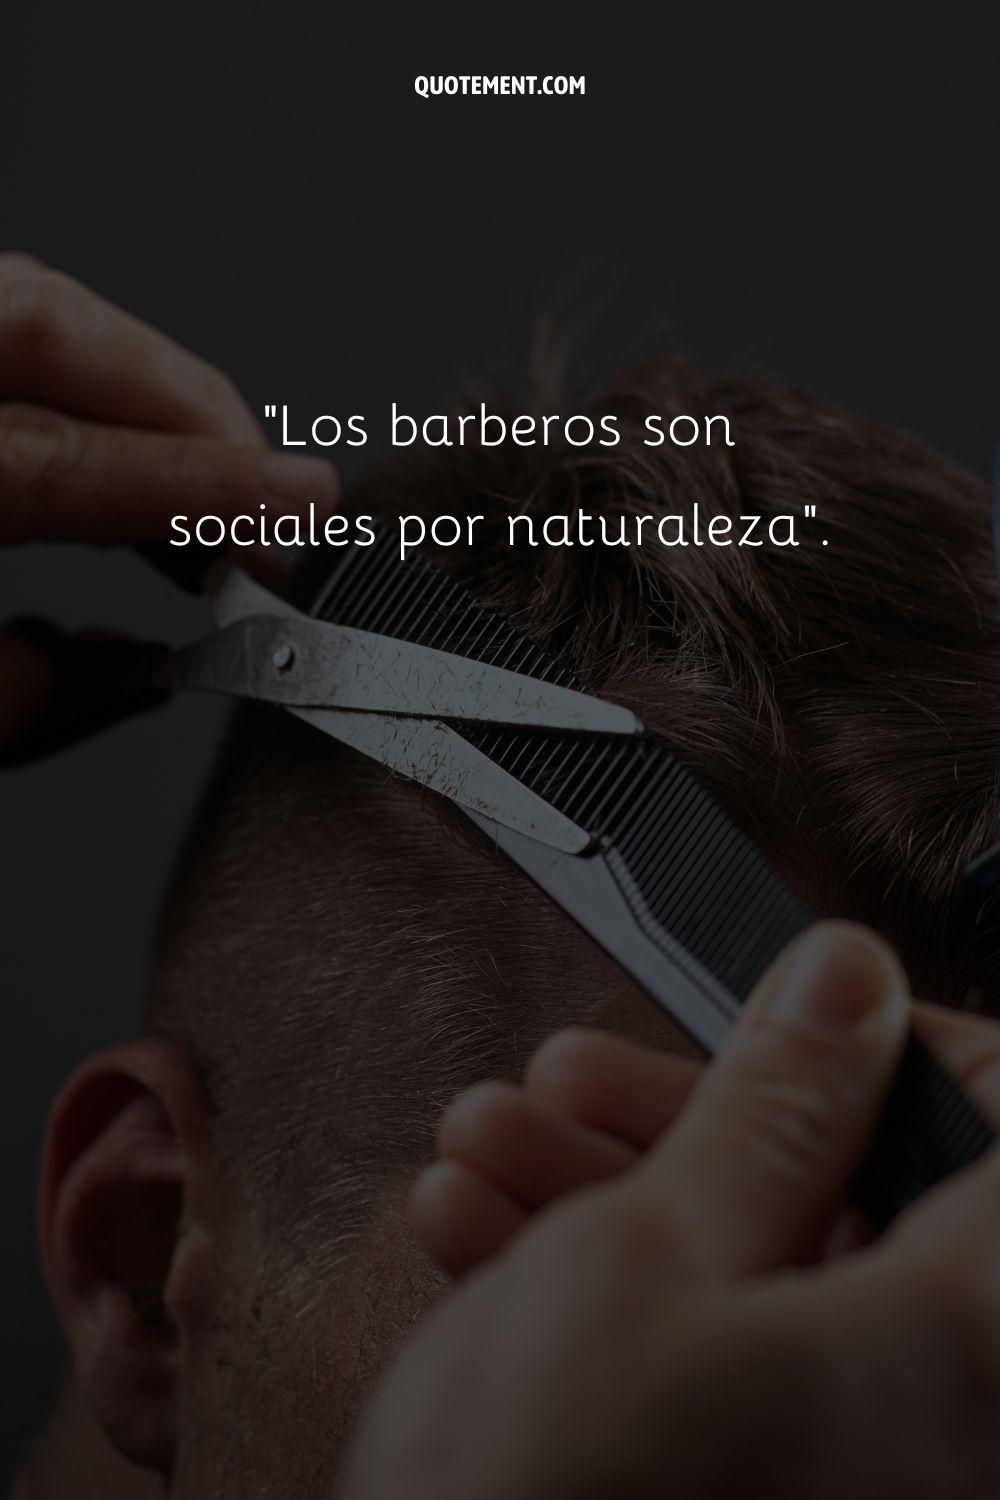 Los barberos son sociales por naturaleza.